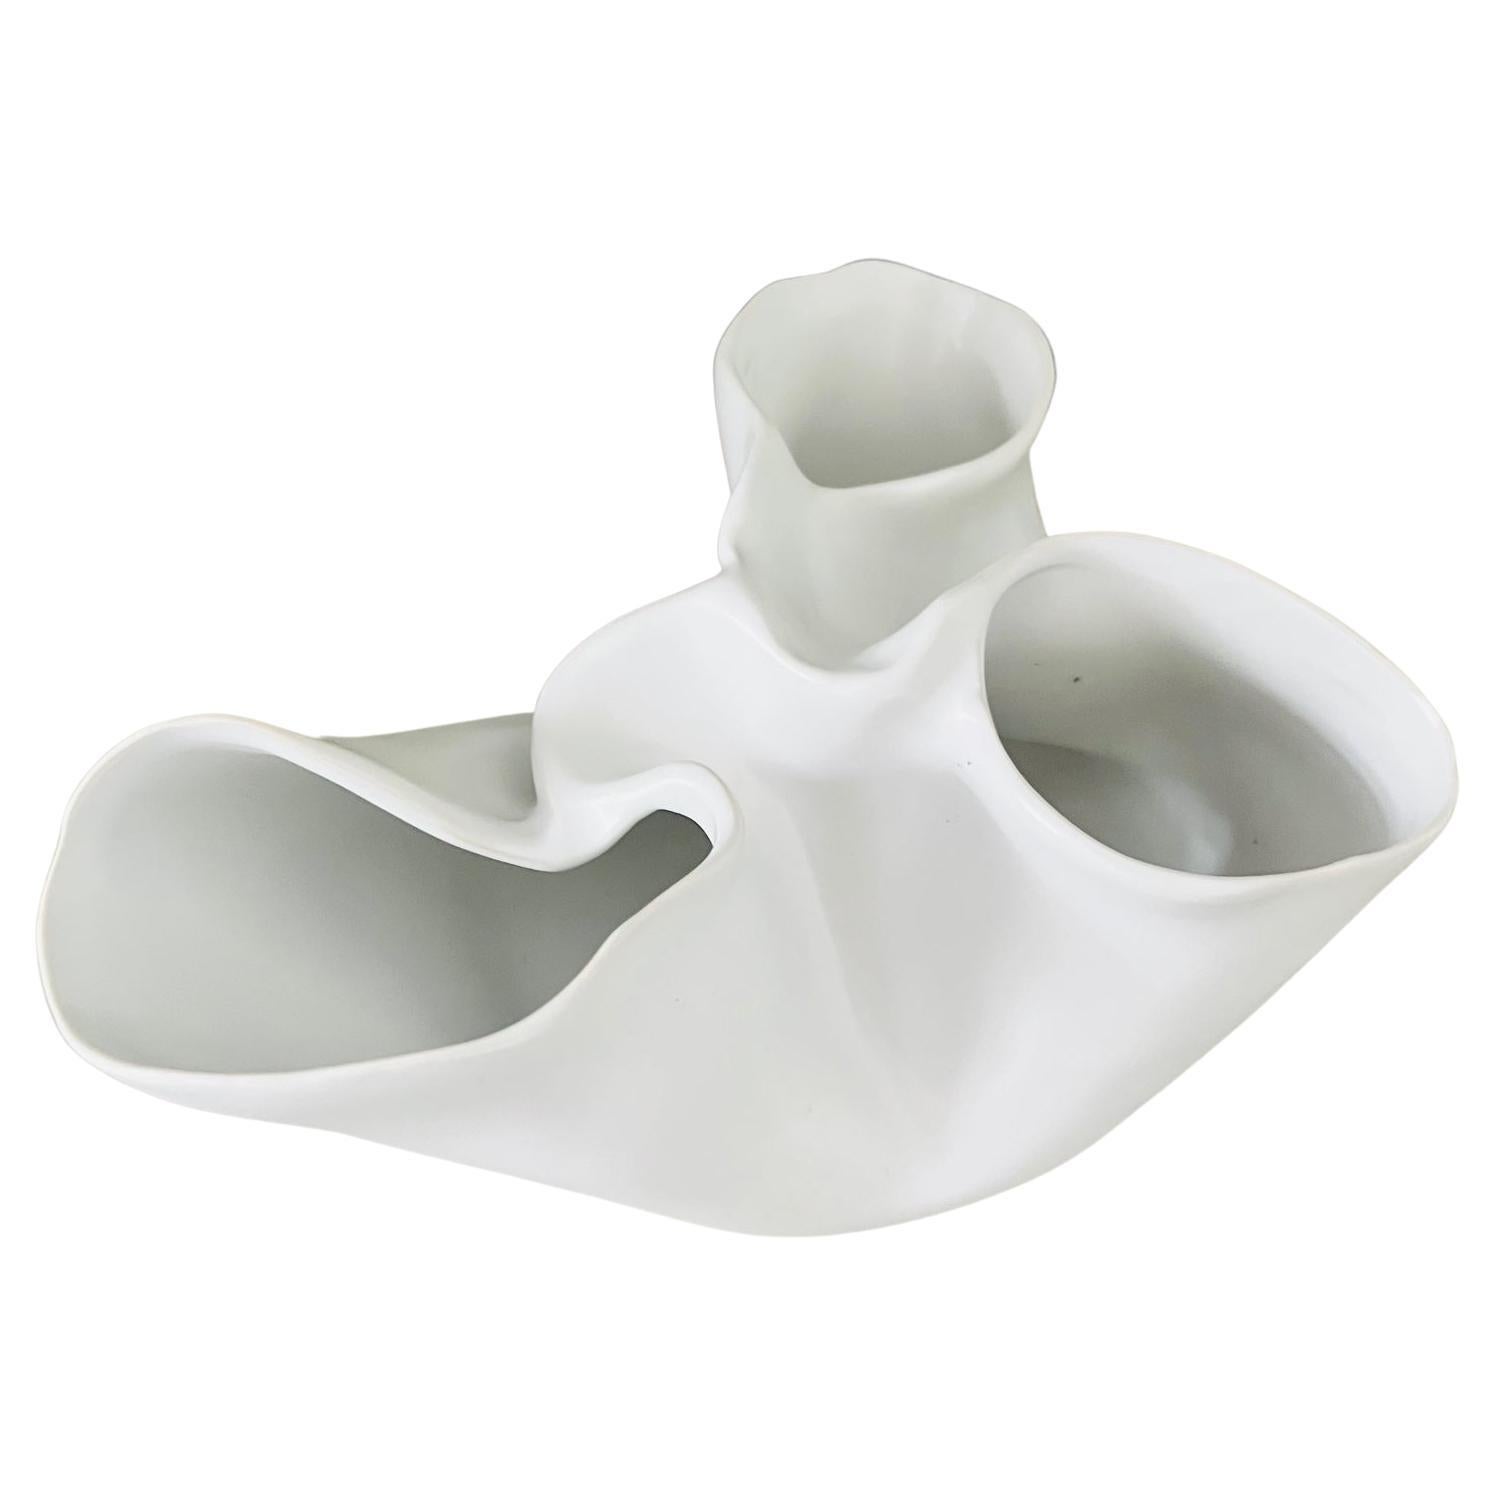 Zeitgenössische abstrakte niedrige Vase mit organischer Form, die an einen Herzmuskel mit Klappen erinnert. Die Porzellanvase hat eine mattweiße Oberfläche und kann als dekorative Schale oder als Objekt verwendet werden.